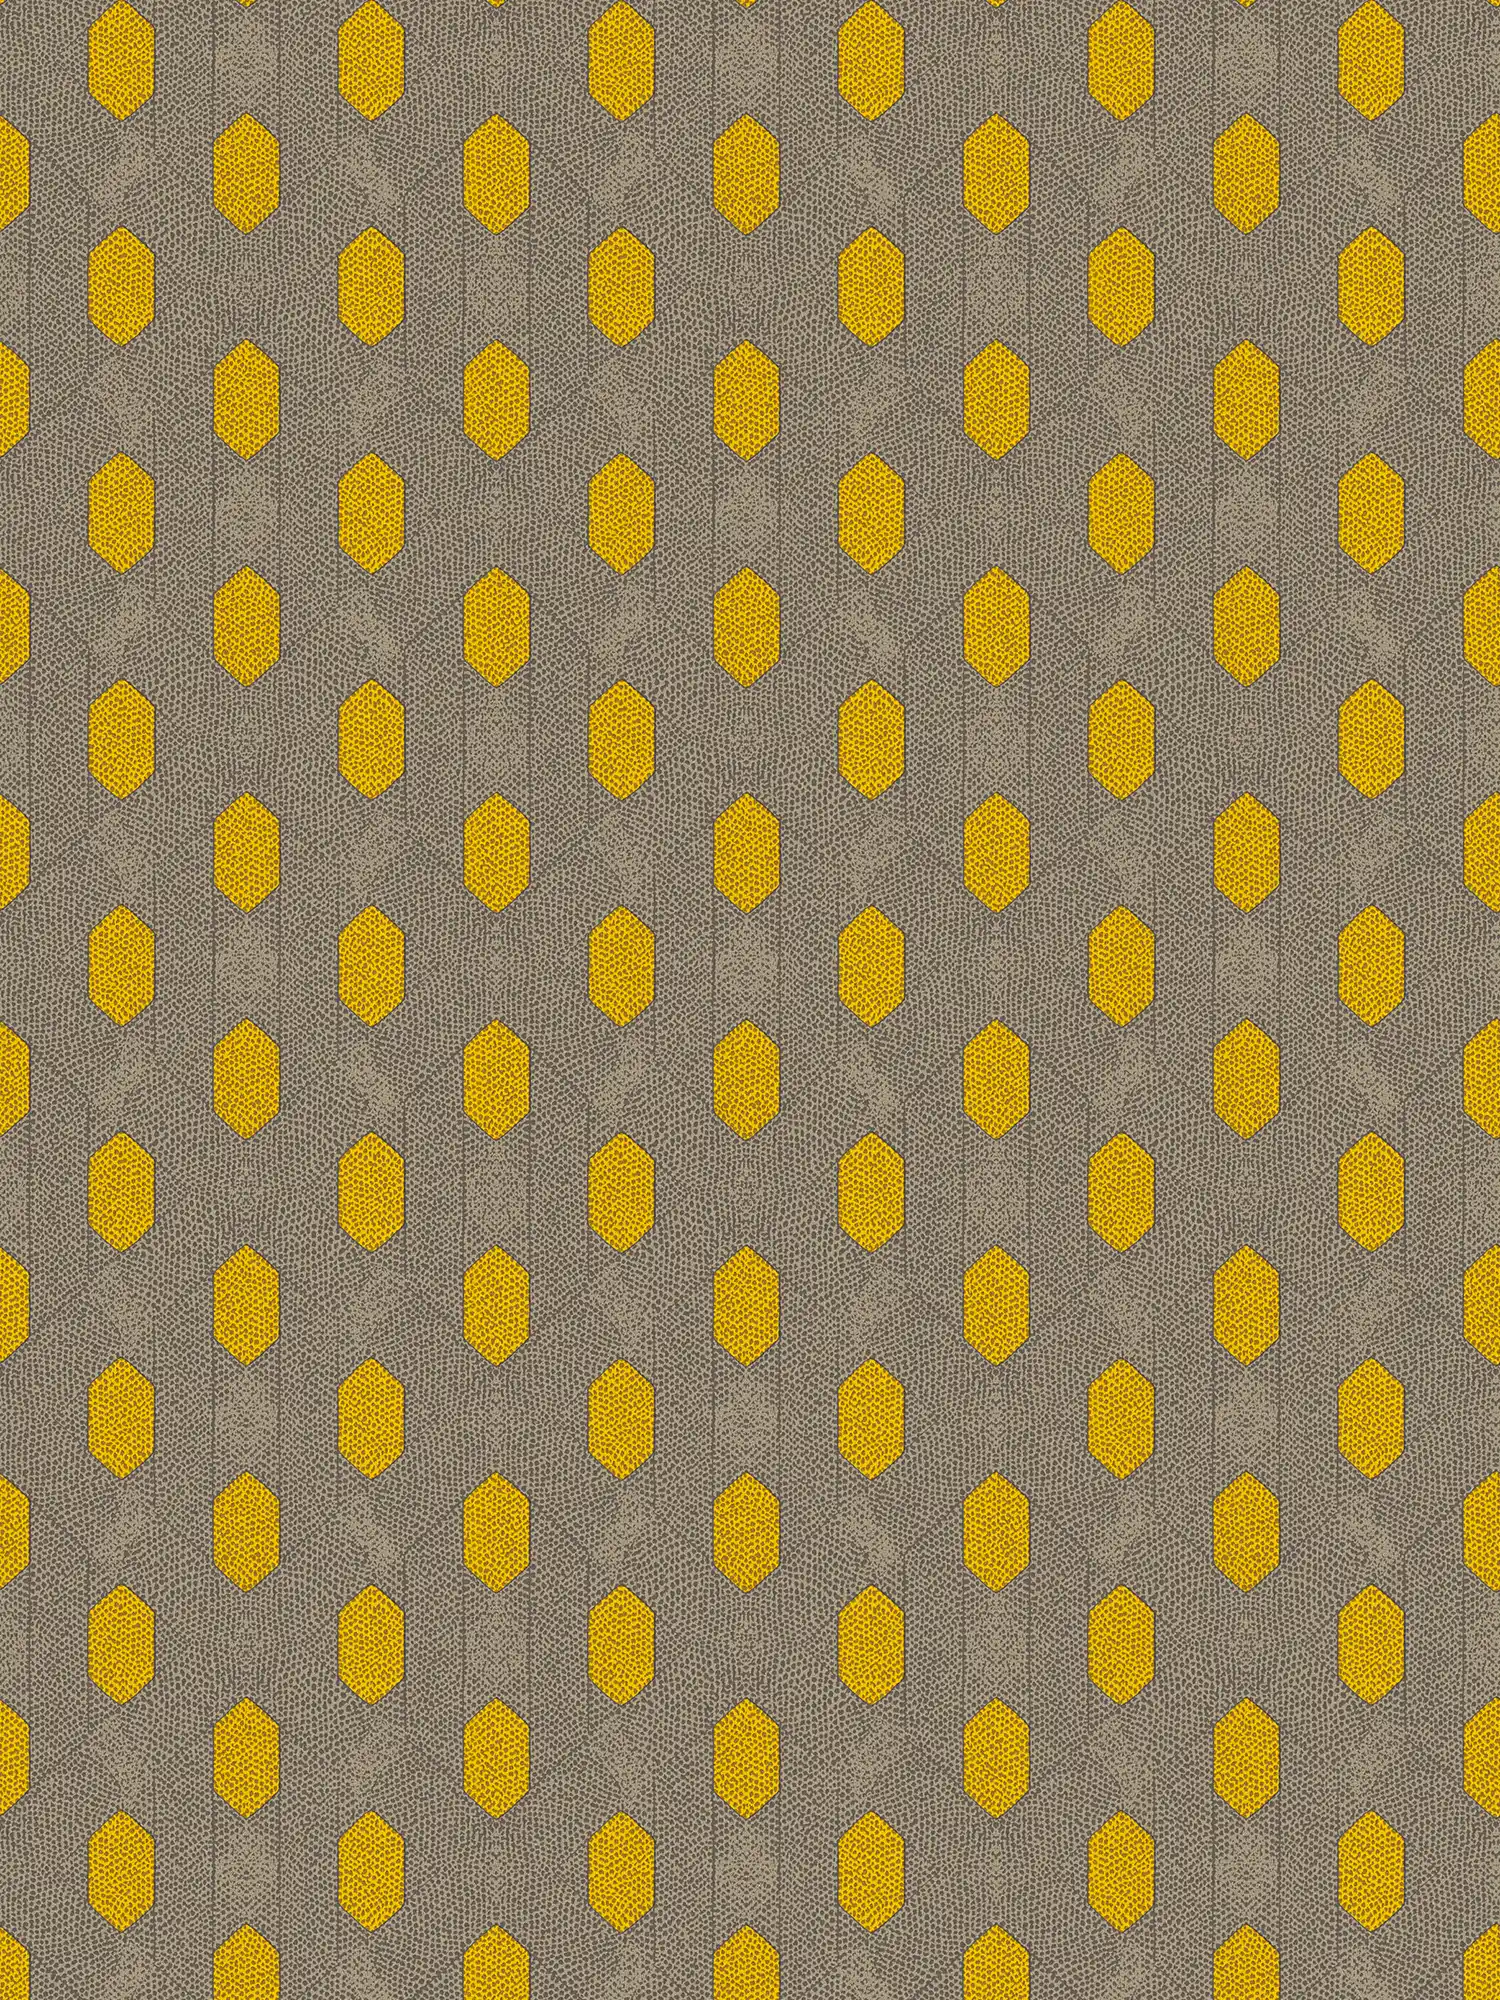 Vliesbehang met geometrisch stippenpatroon - geel, grijs, bruin
